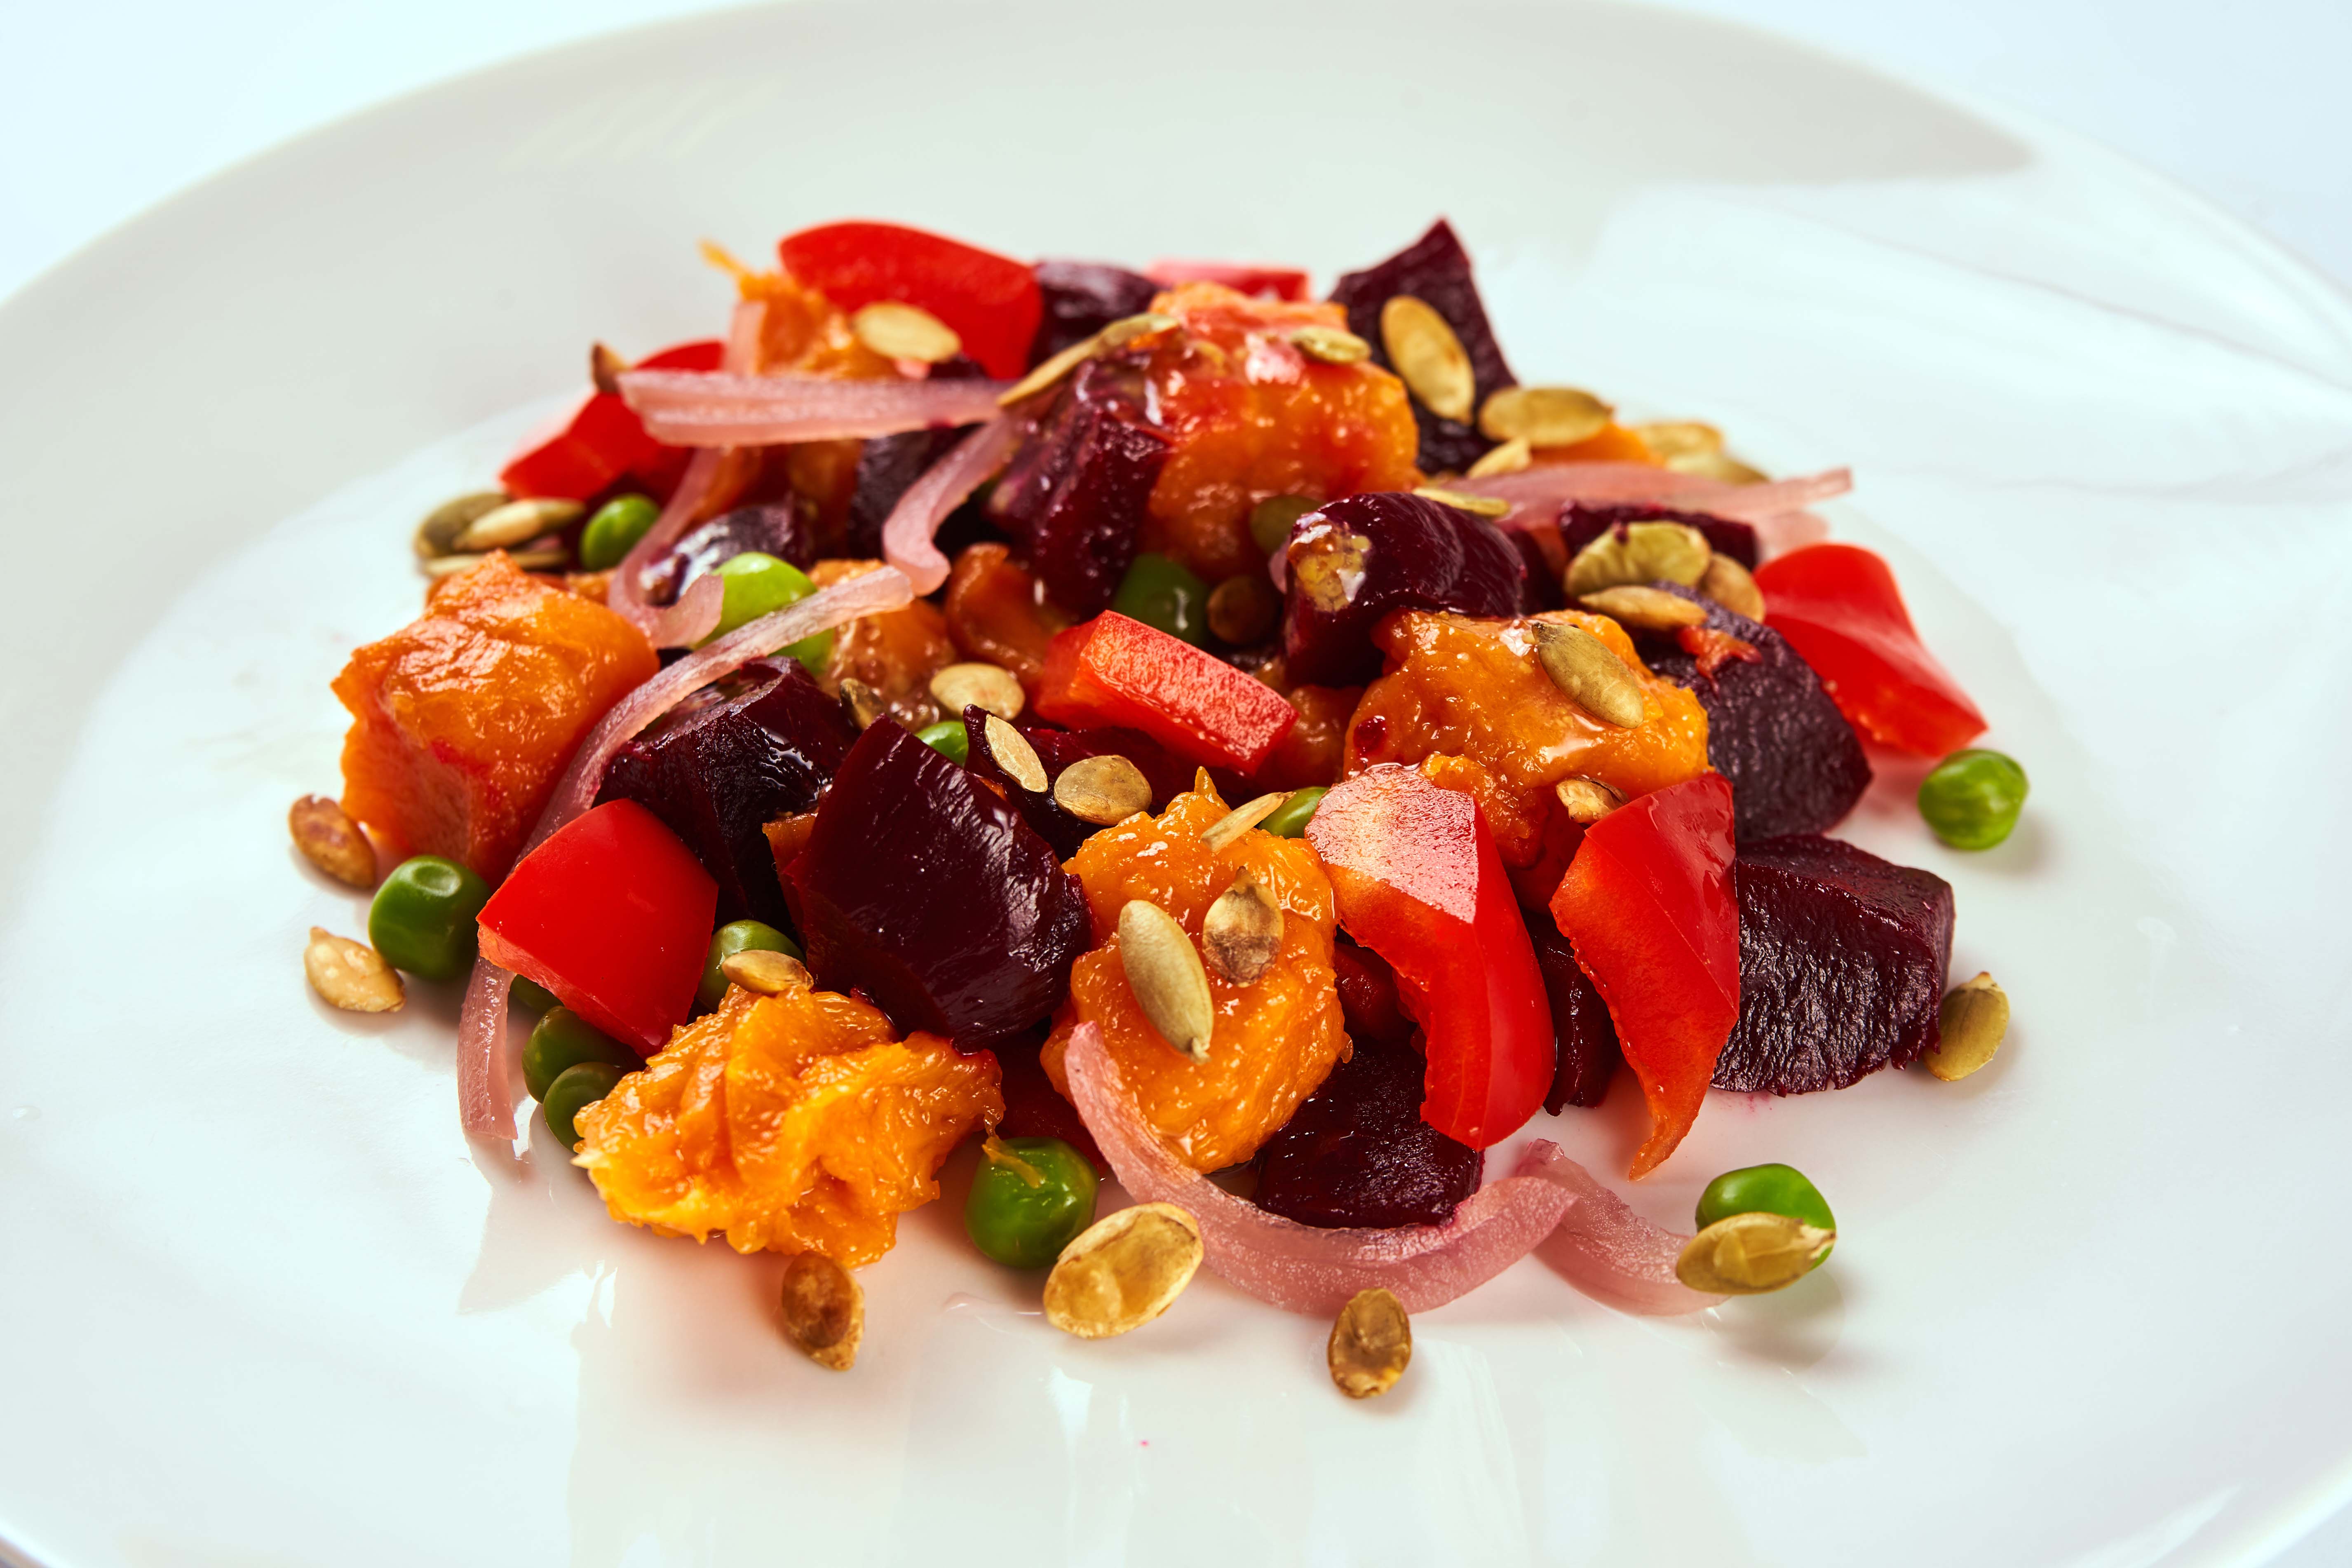 Армянский салат из овощей 4 буквы. Салат из запеченных овощей. Салат с печеными овощами. Запеченные овощи в ресторане. Армянские печеные овощи.